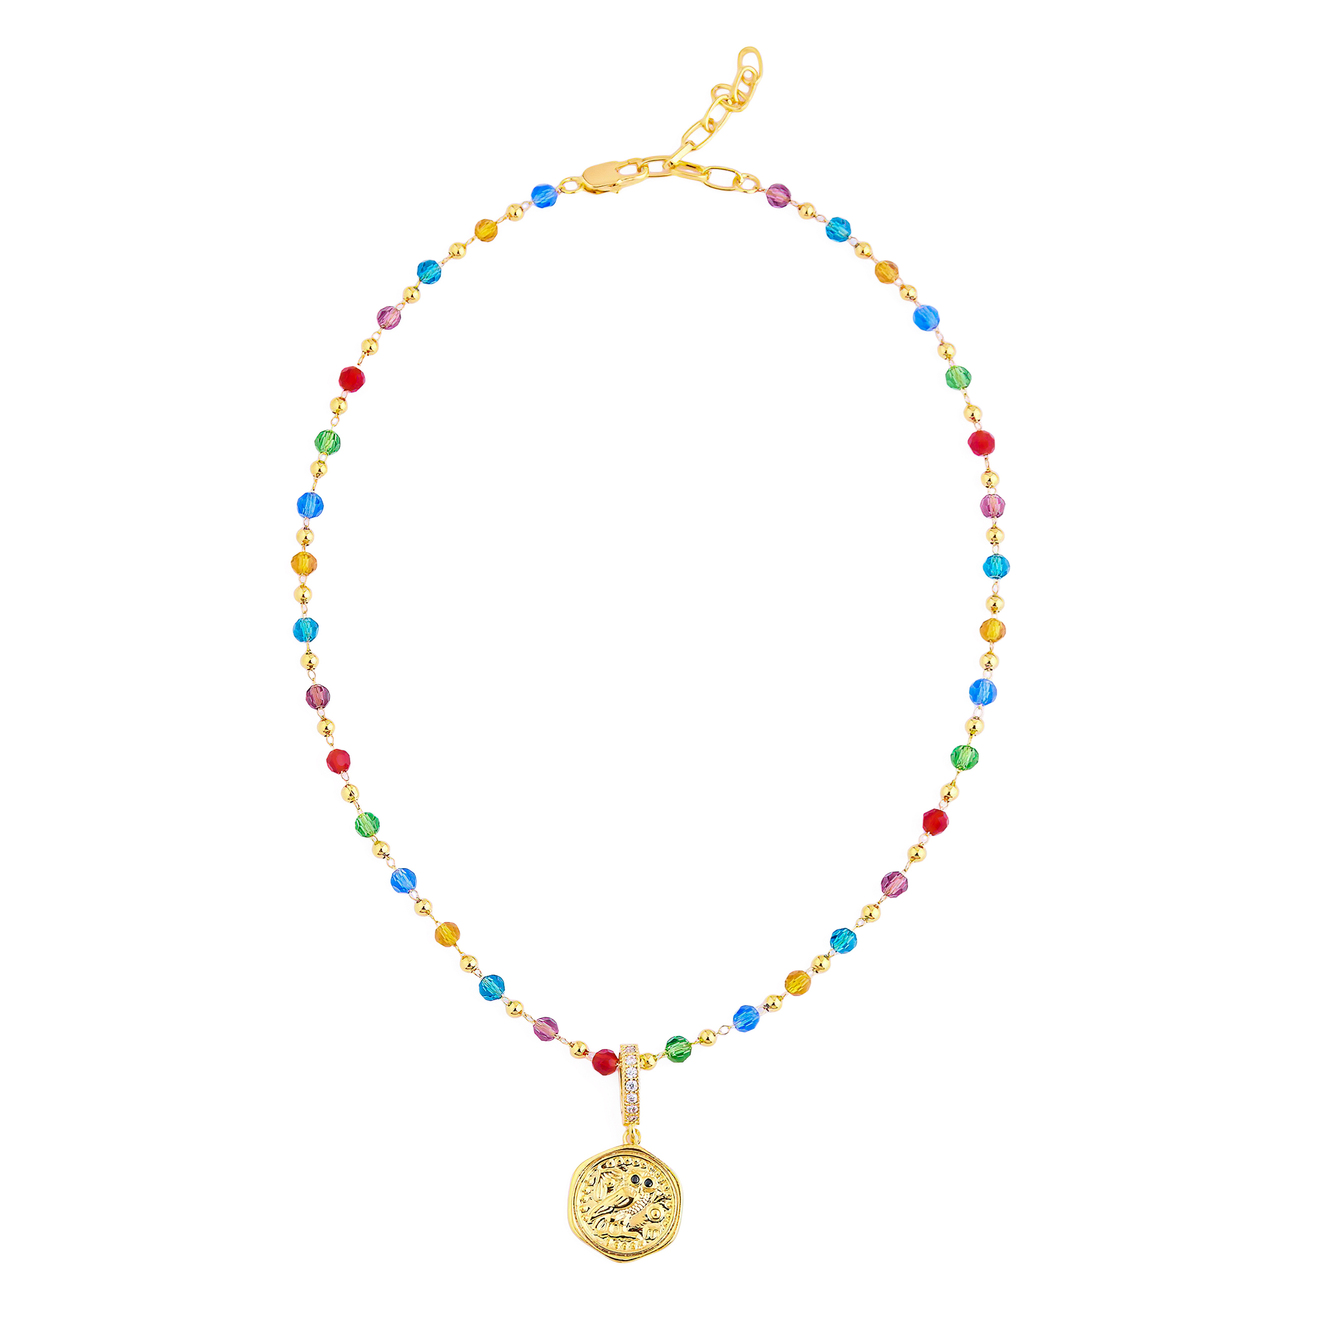 Aqua Разноцветное колье-бусы с рельефным золотистым медальоном aqua разноцветное колье бусы с рельефным золотистым медальоном